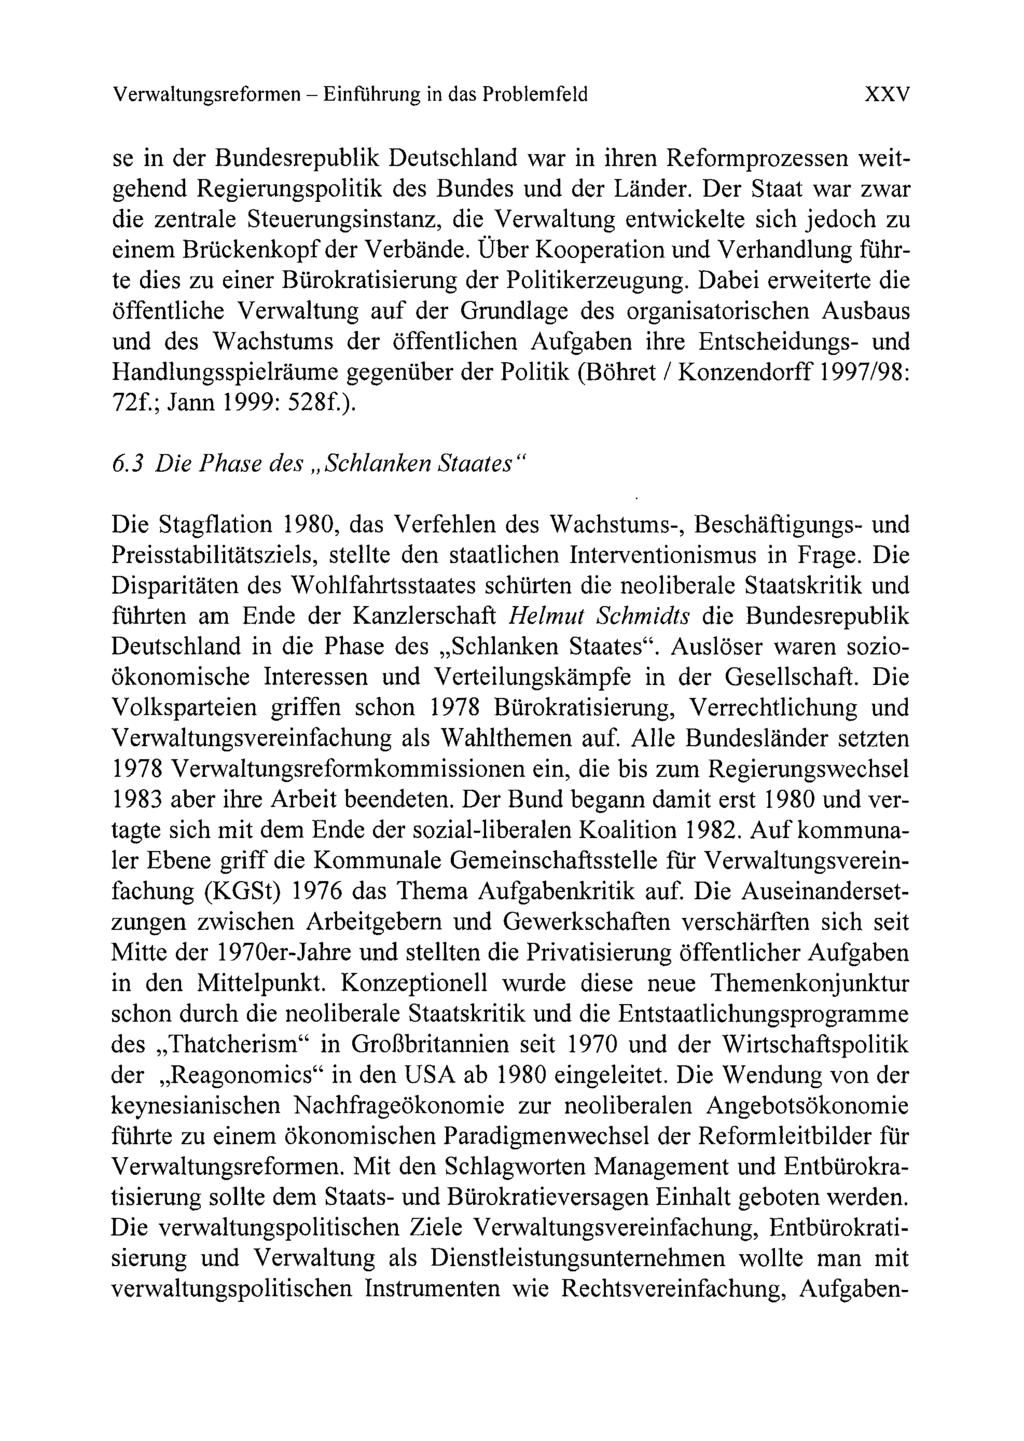 Verwaltungsreformen - Einfiihrung in das Problemfeld XXV se in der Bundesrepublik Deutschland war in ihren Reformprozessen weitgehend Regierungspolitik des Bundes und der Lander.